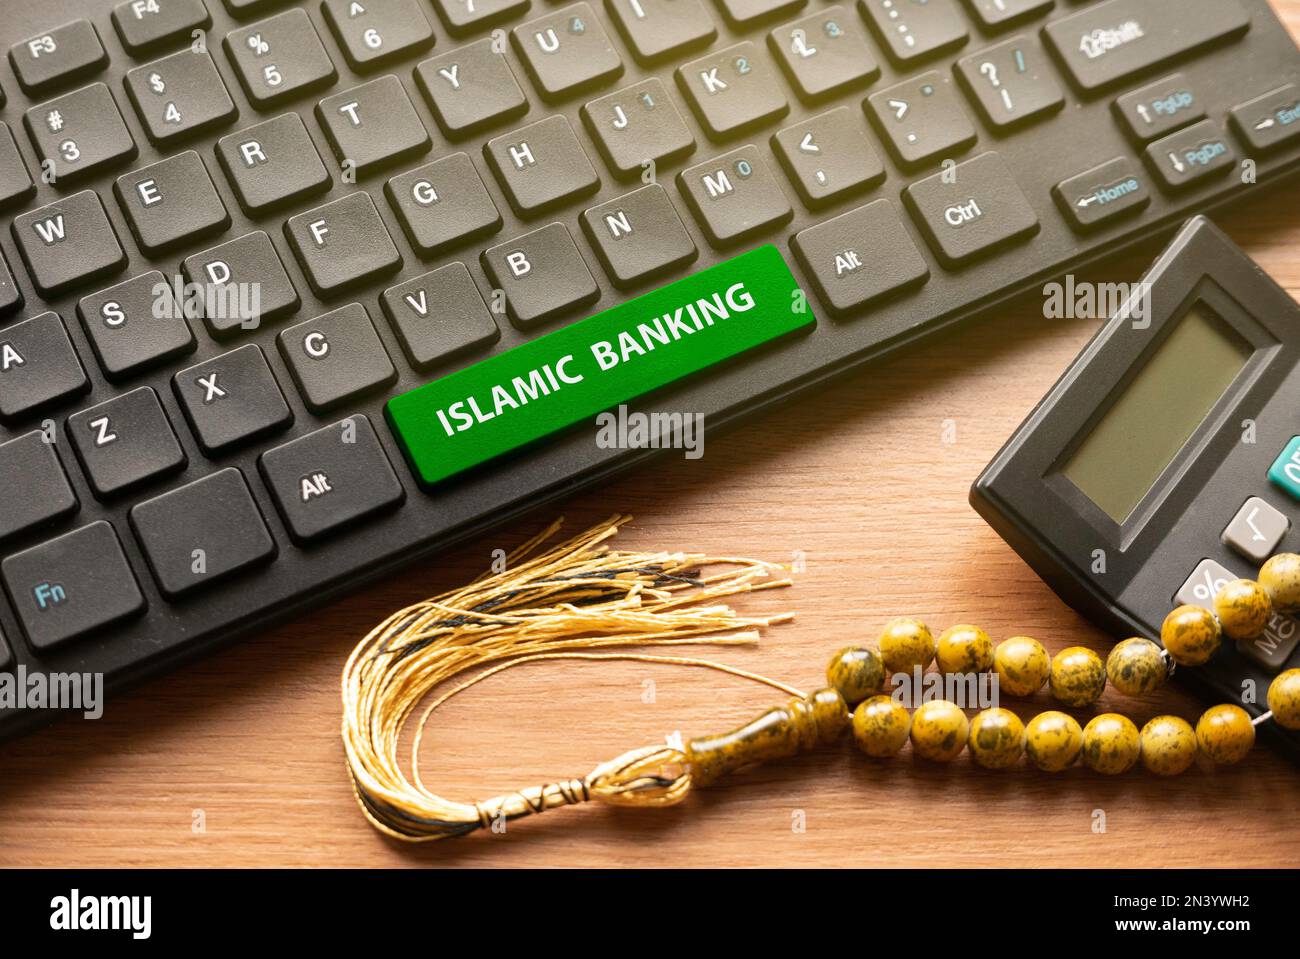 Taschenrechner, Rosenkranz-Perlen und Computertastatur mit grünem Knopf, geschrieben mit Islamic Banking. Stockfoto